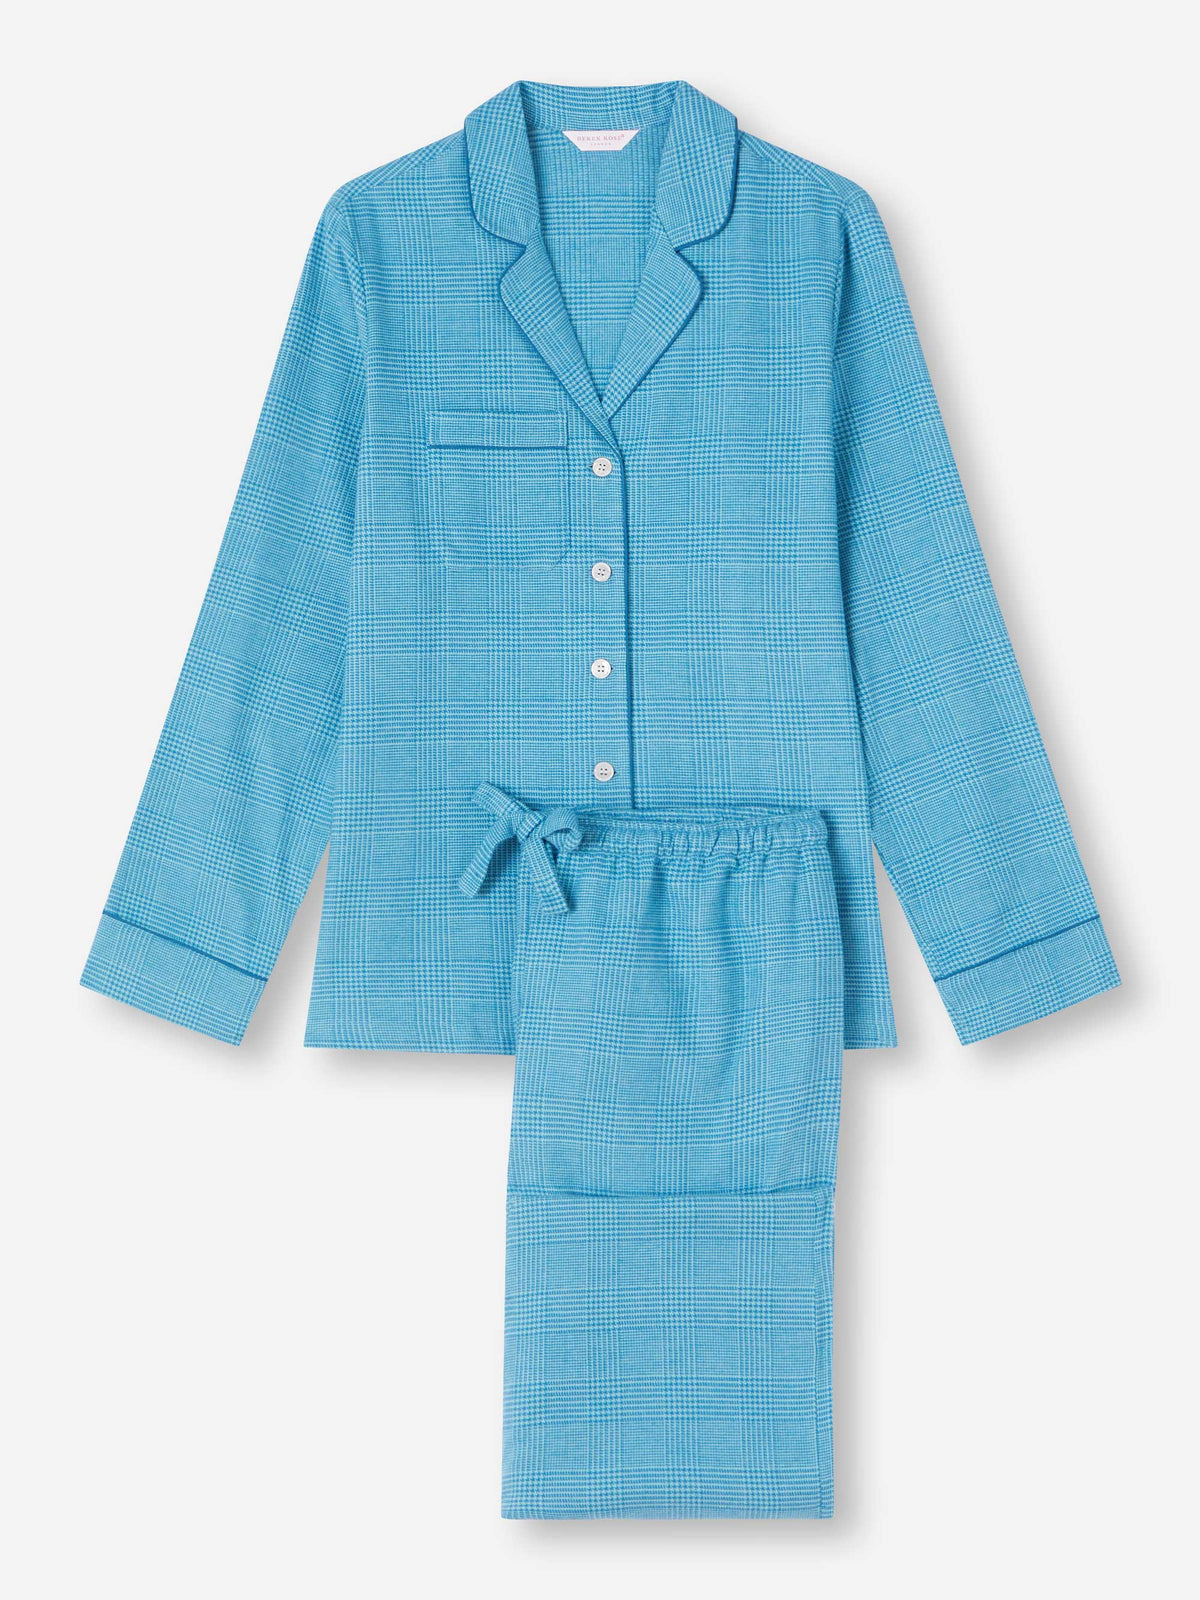 Women's Pyjamas Kelburn 34 Brushed Cotton Blue